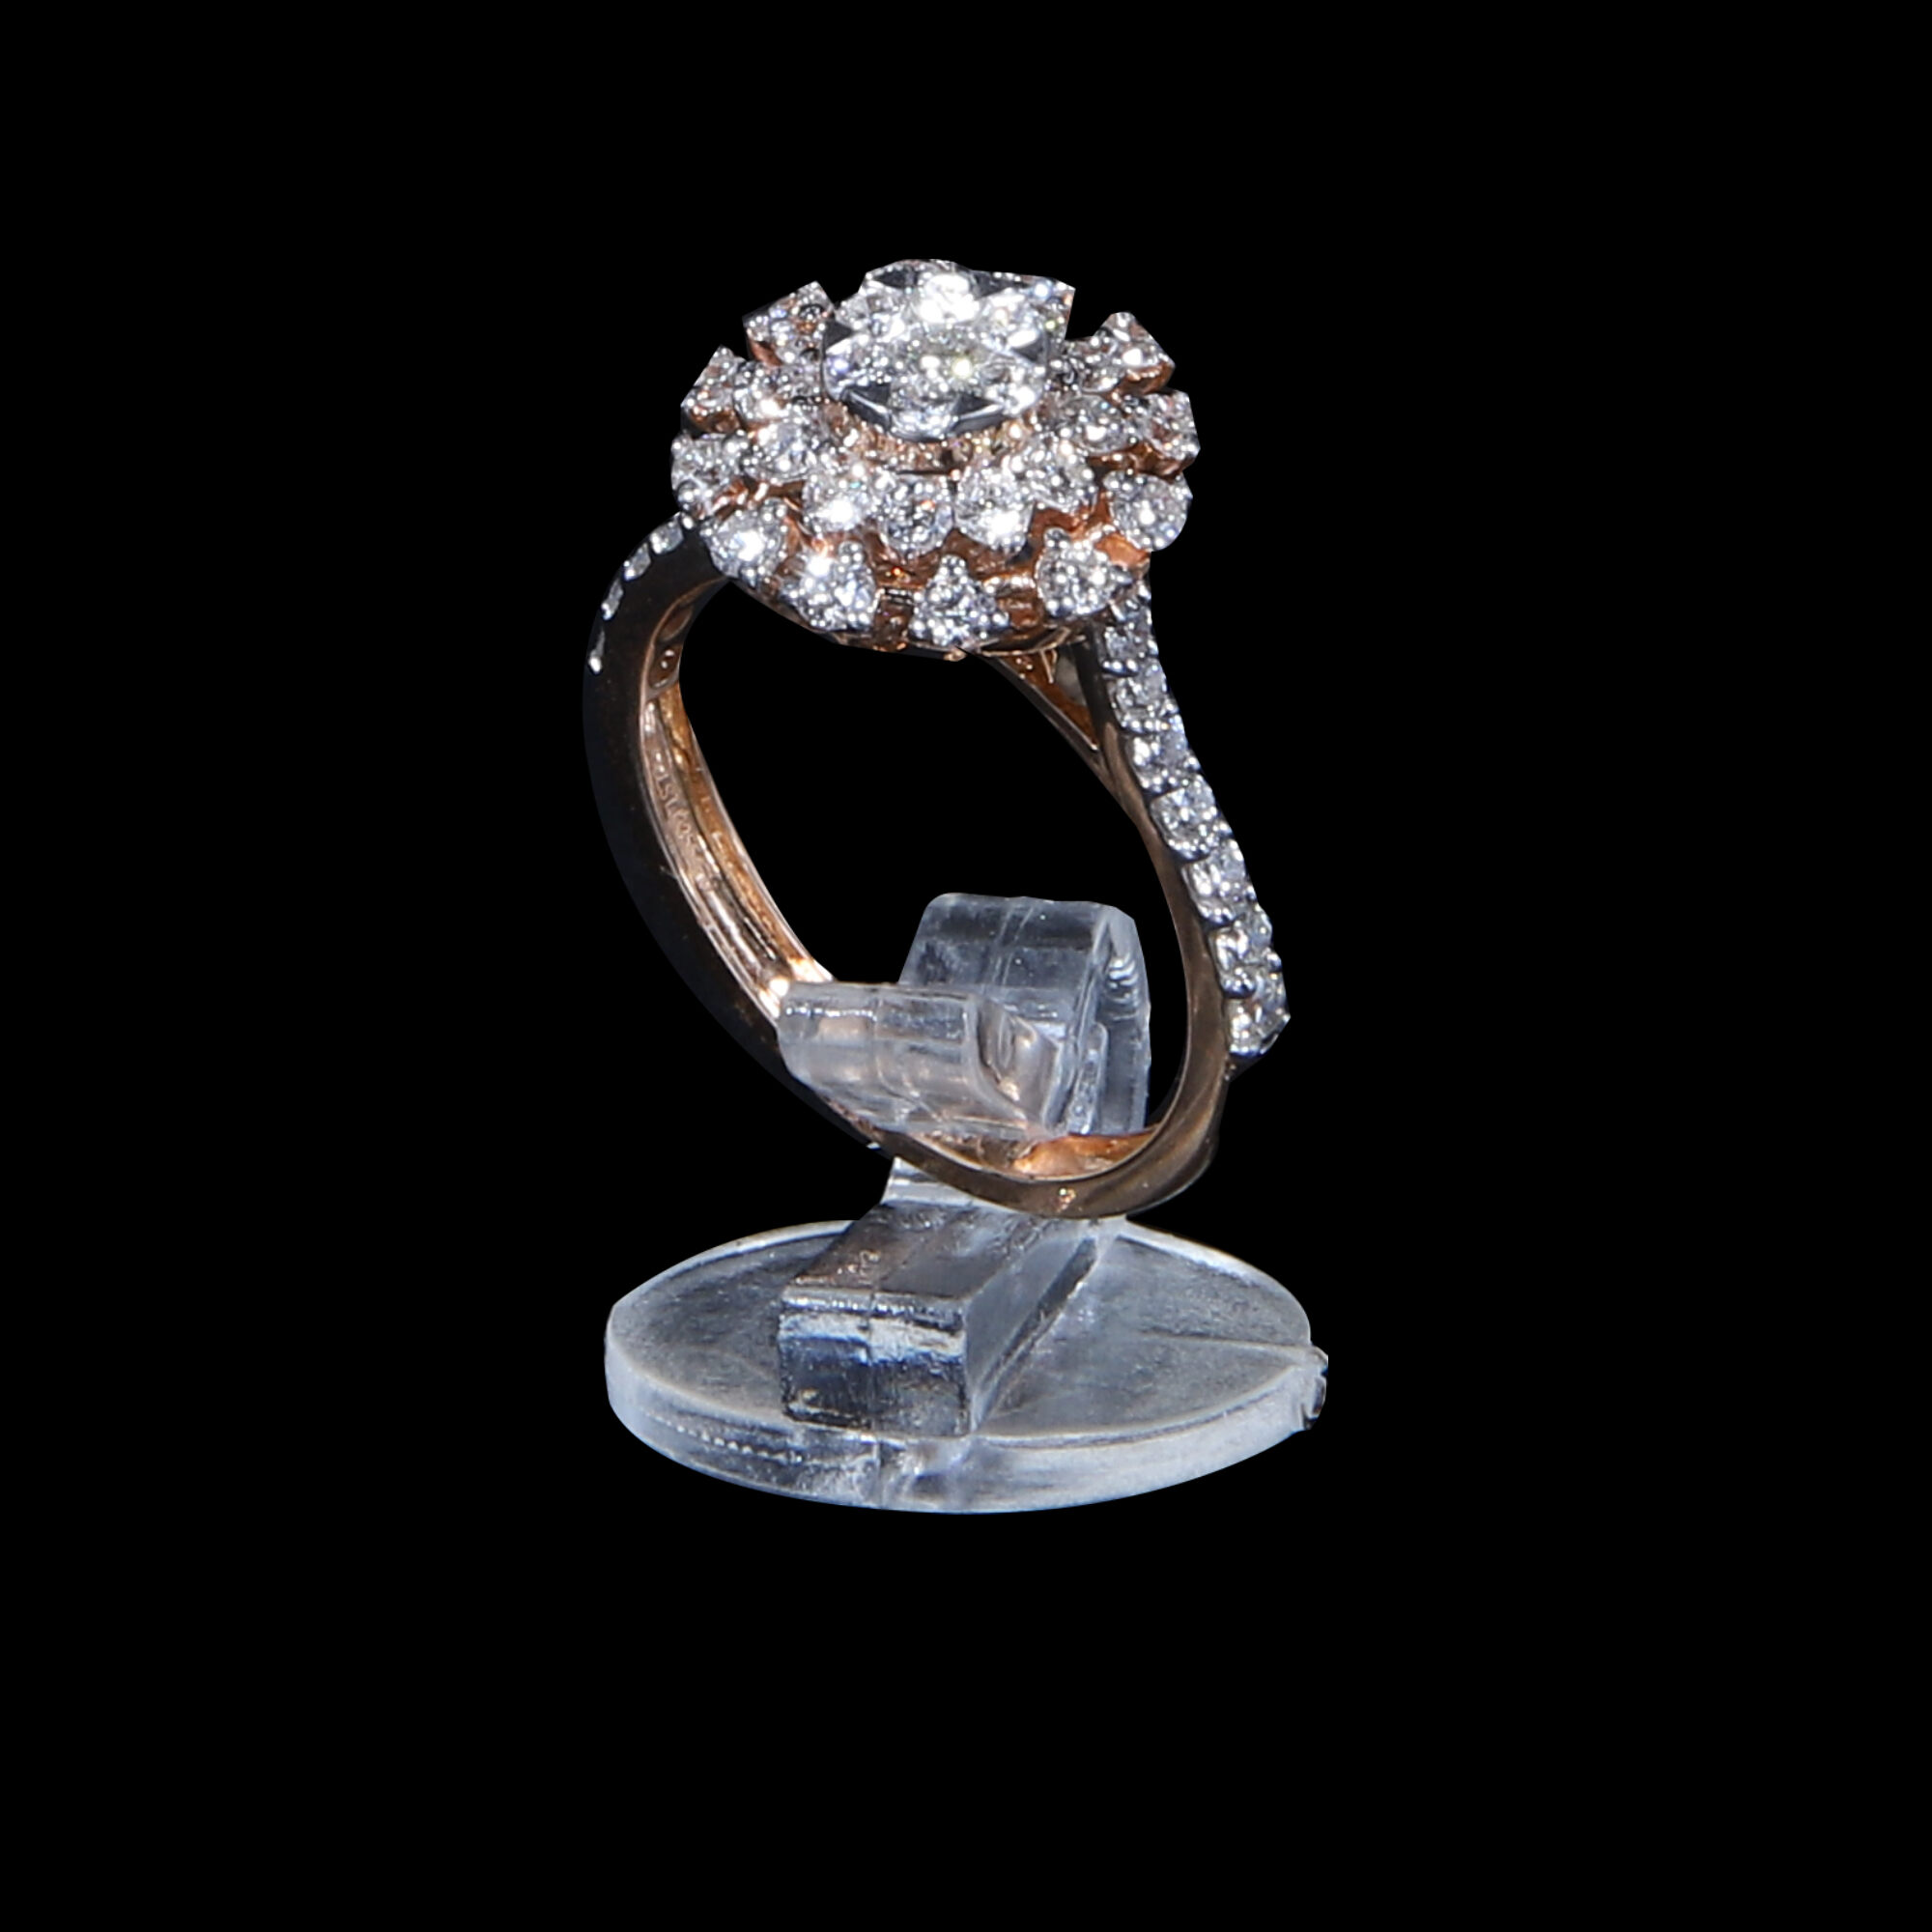 Designer Stylish 18 K Gold Diamond Ring for Women and Girls